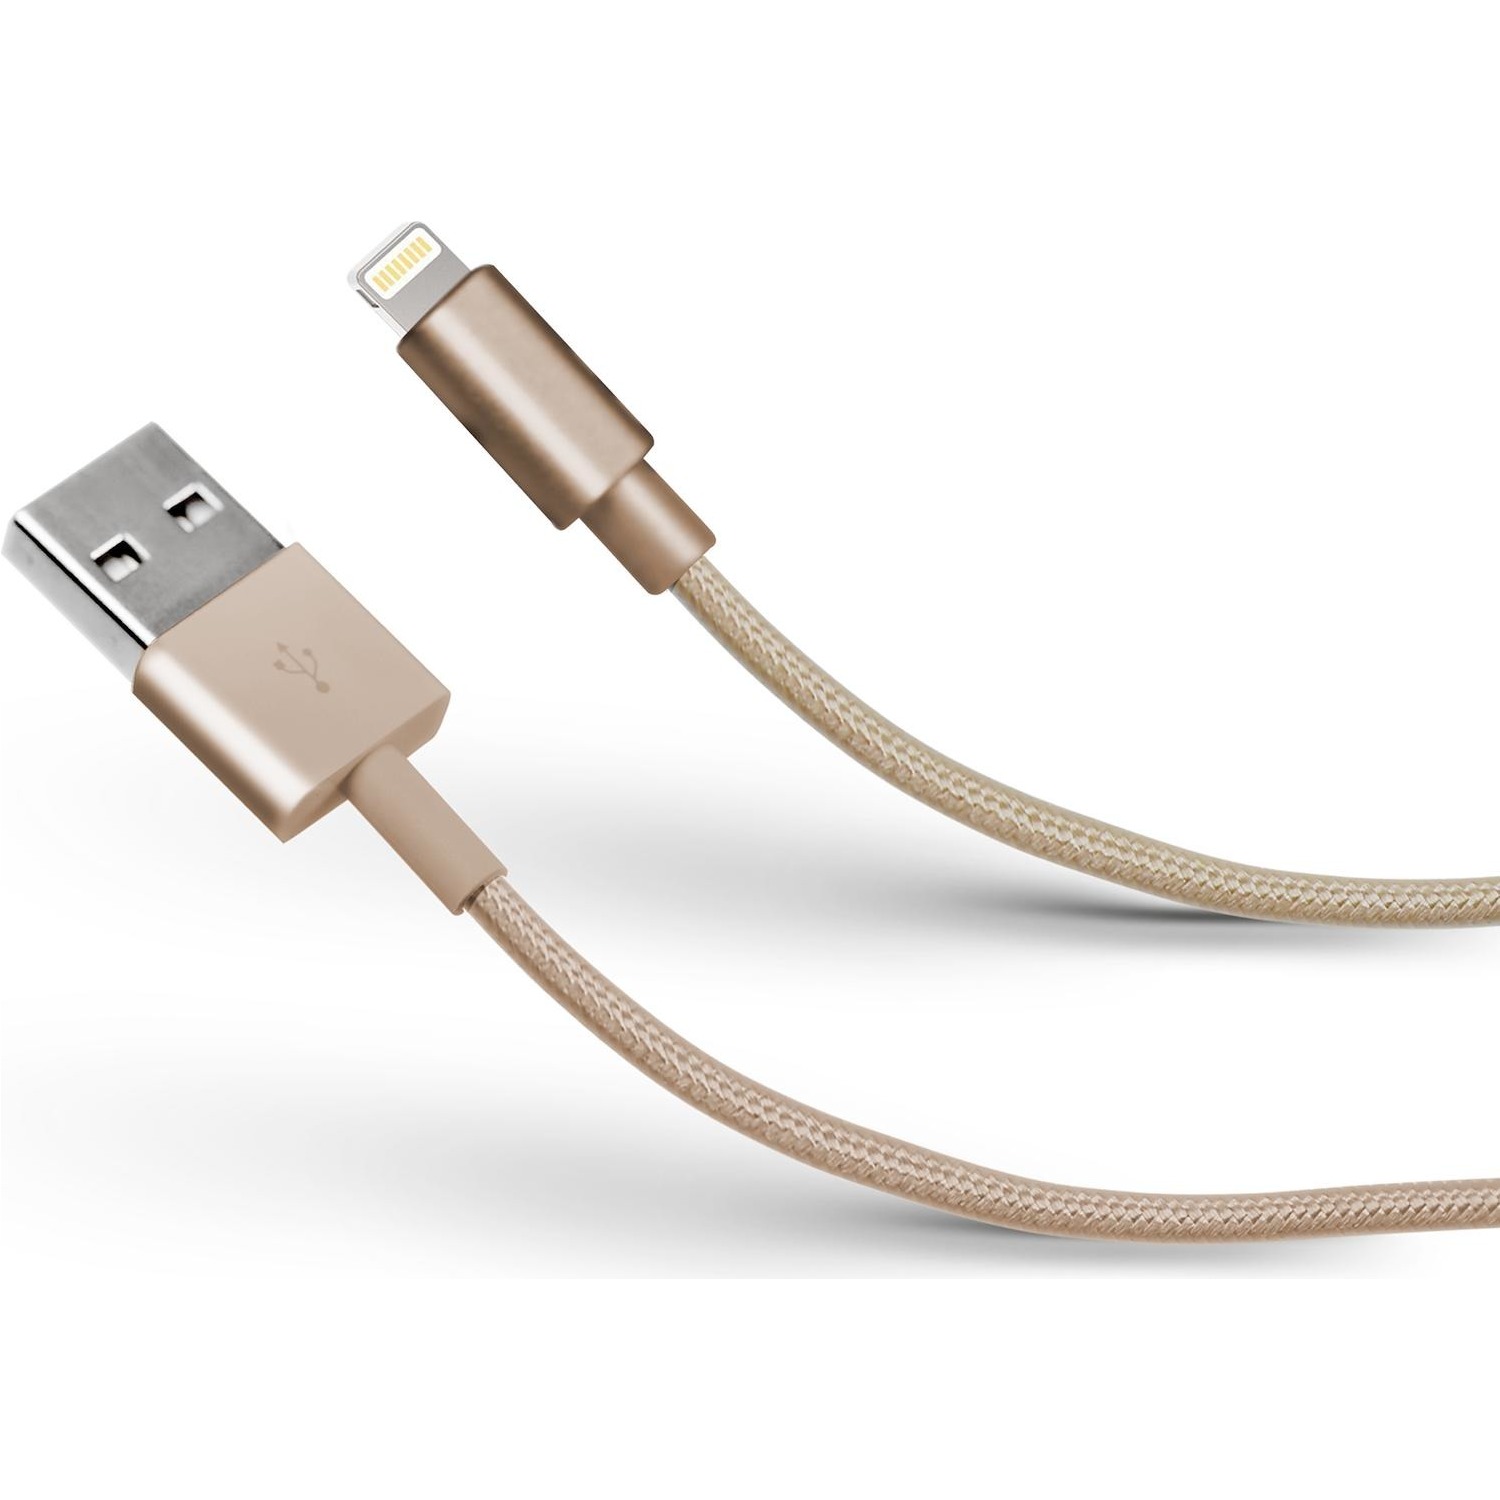 Immagine per Cavo dati SBS USB lightning MFI 1 mt USB to lightning MFI da DIMOStore